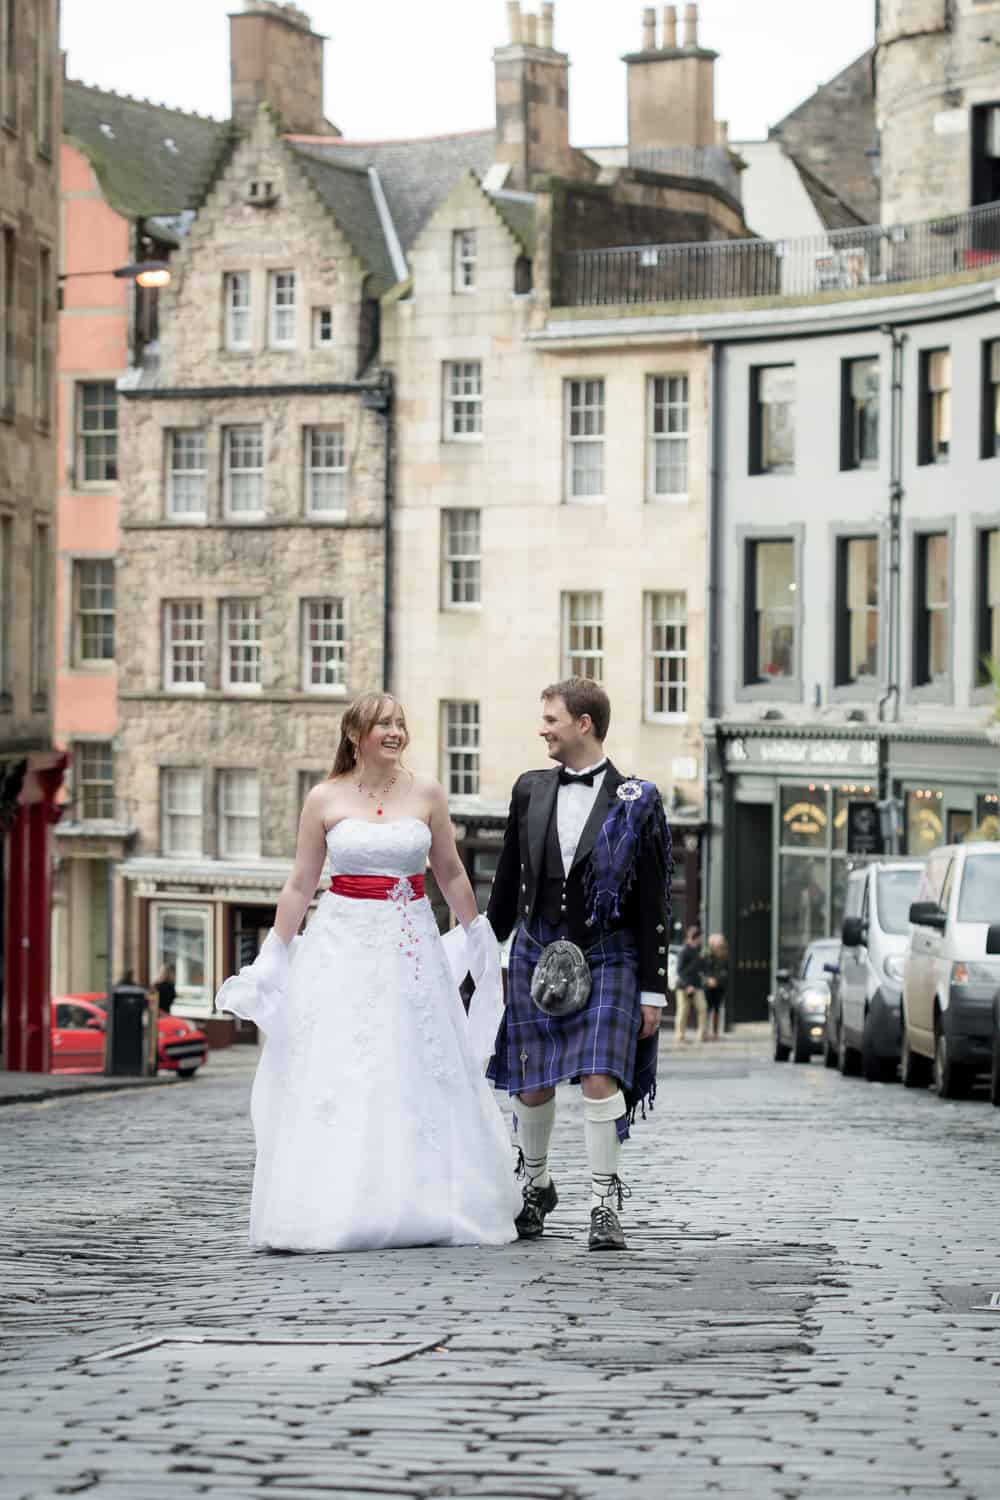 Top romantic places to propose in Edinburgh. 51